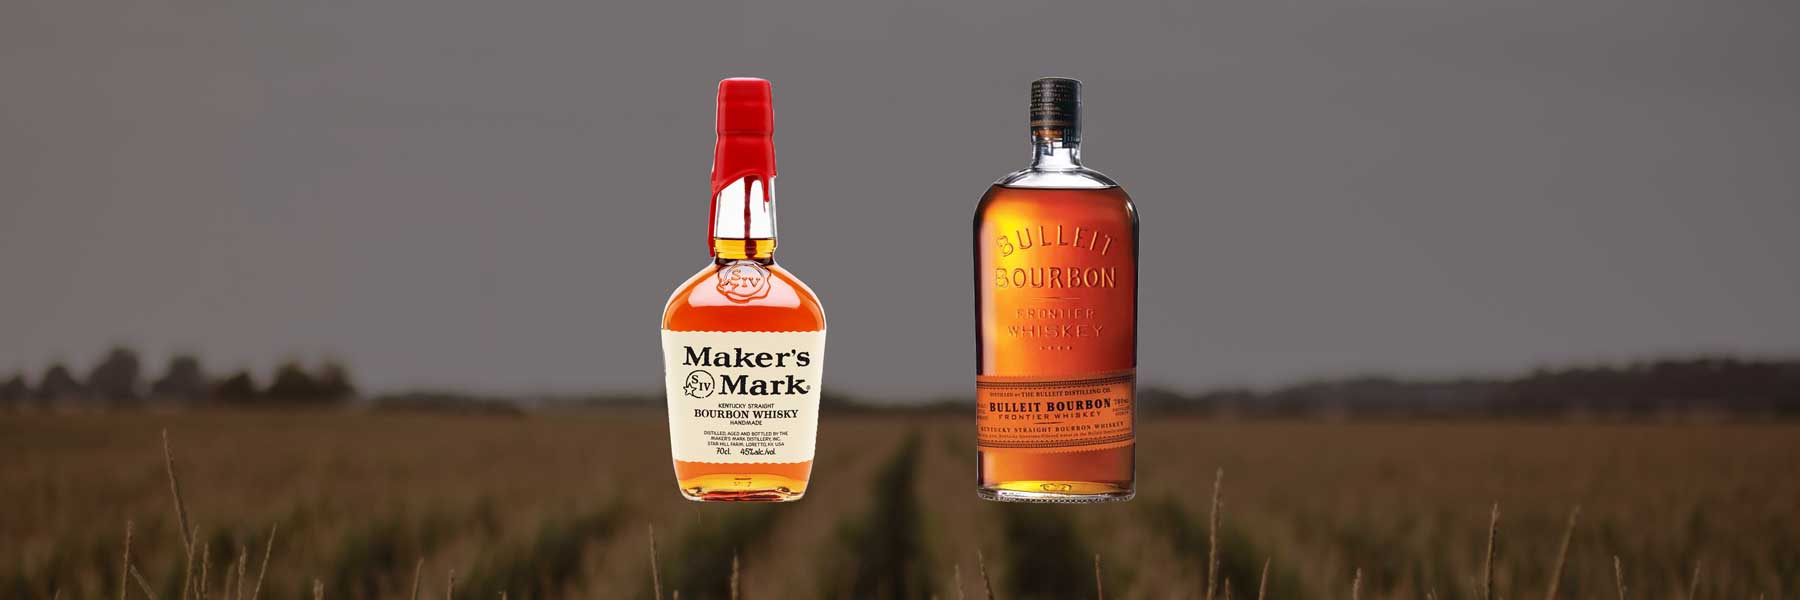 Maker’s Mark vs Bulleit | Which wins the Kentucky bourbon battle?